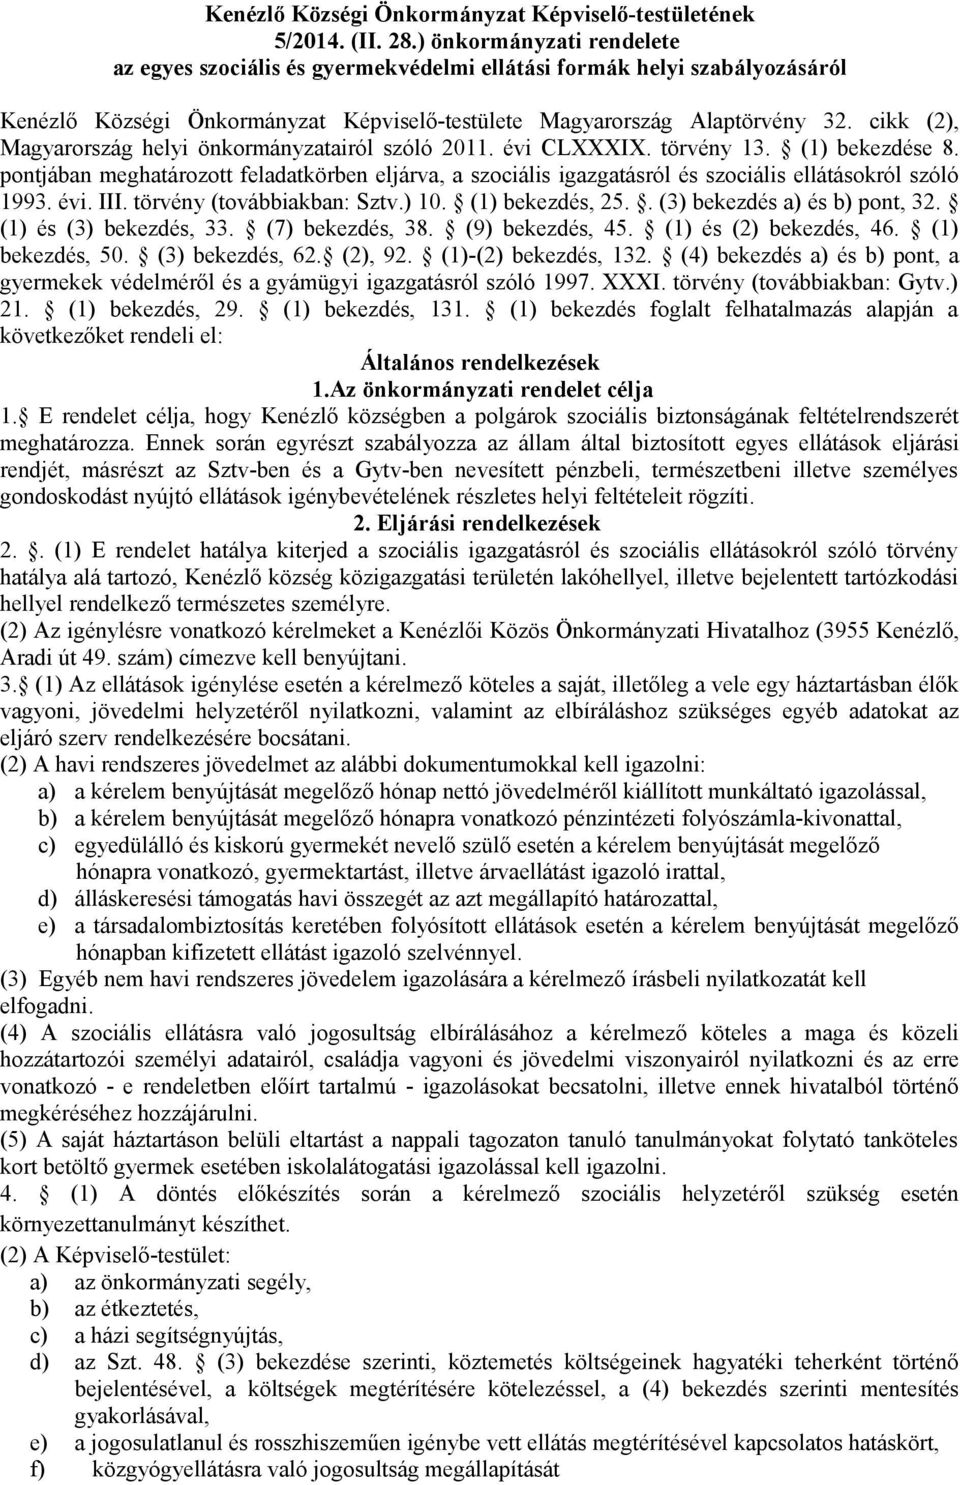 cikk (2), Magyarország helyi önkormányzatairól szóló 2011. évi CLXXXIX. törvény 13. (1) bekezdése 8.